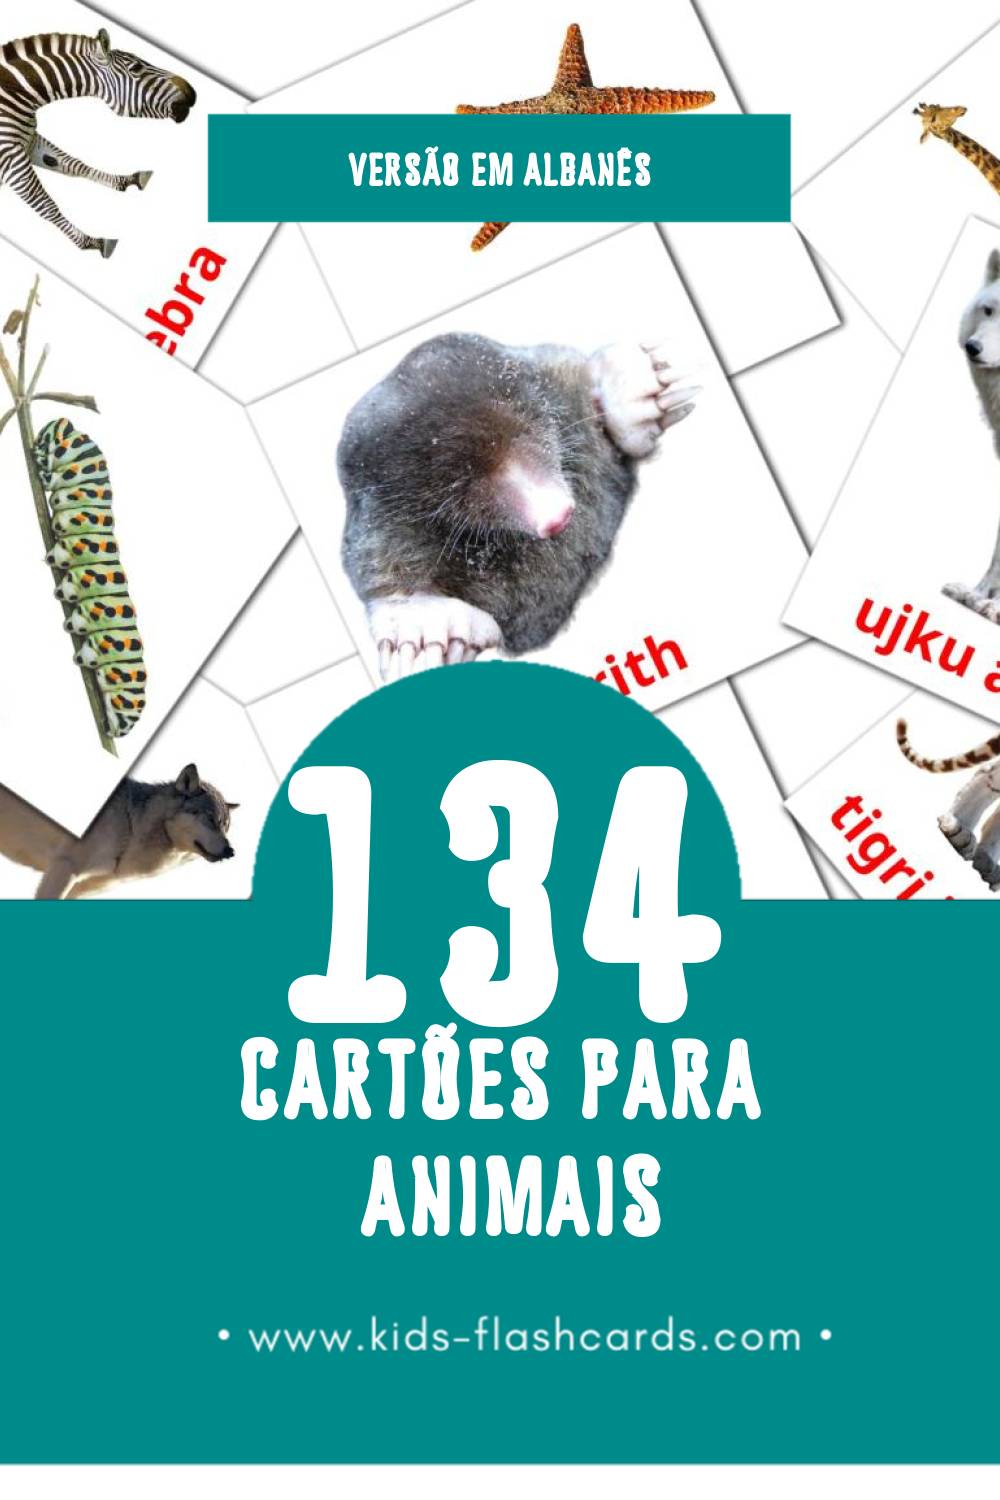 Flashcards de Kafshët Visuais para Toddlers (134 cartões em Albanês)